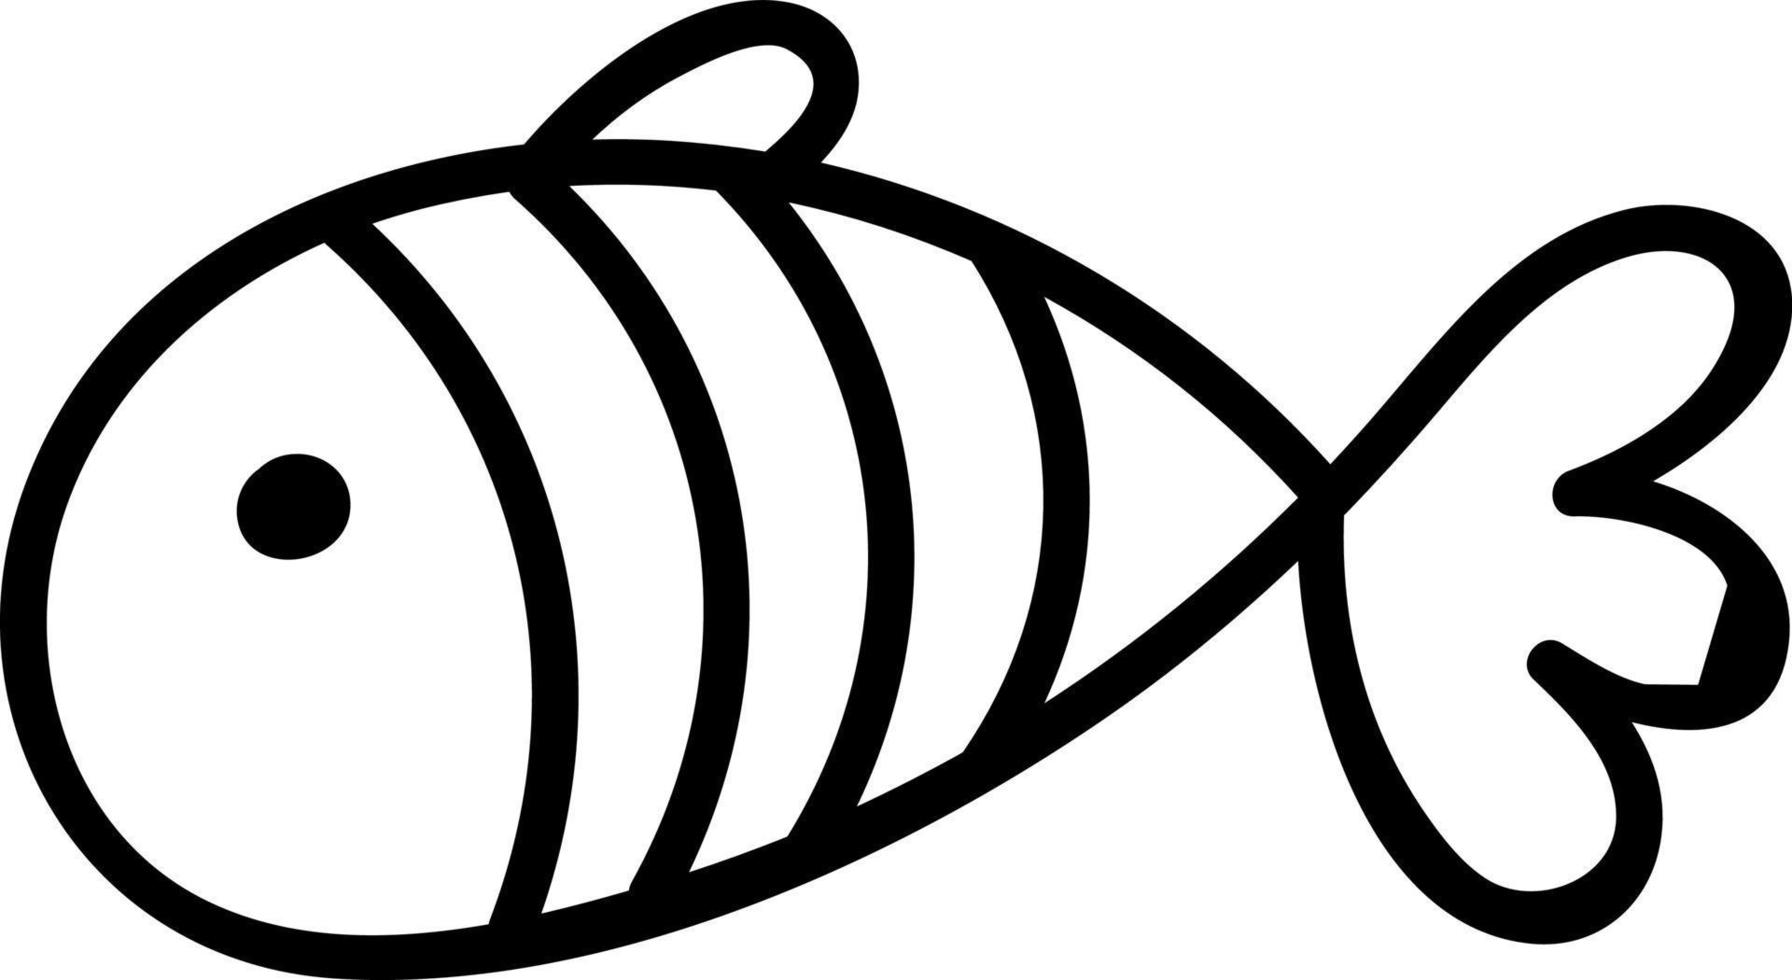 Pescado blanco con tres rayas, ilustración, vector sobre fondo blanco.